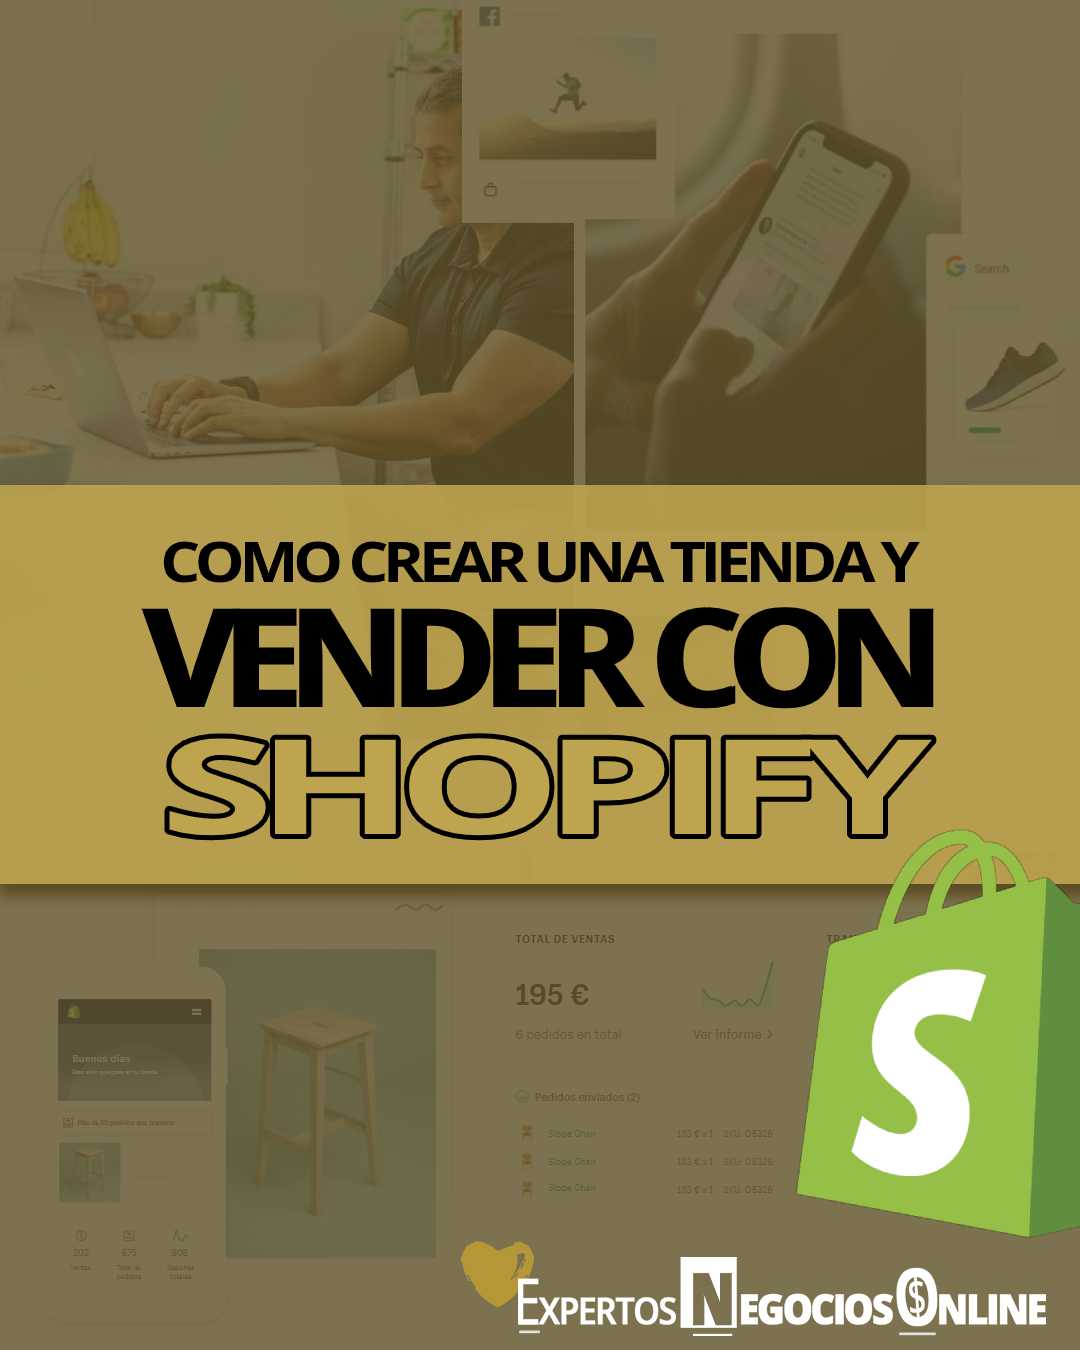 Tiendas Shopify. Ejemplos, ventajas y desventajas de una tienda Shopify